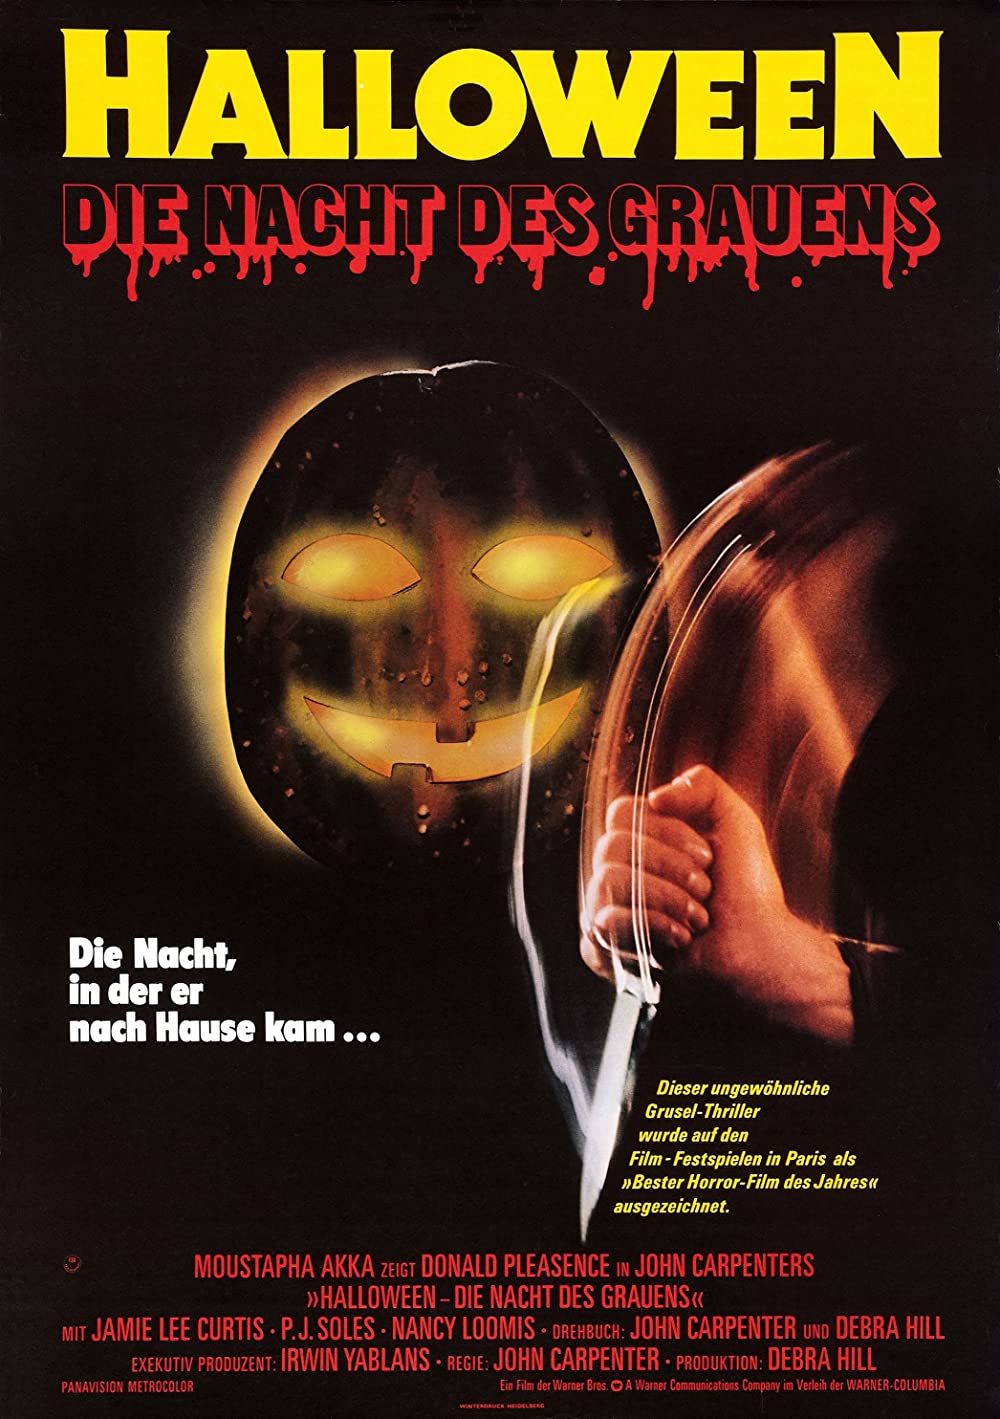 Filmbeschreibung zu Halloween - Die Nacht des Grauens (1978)